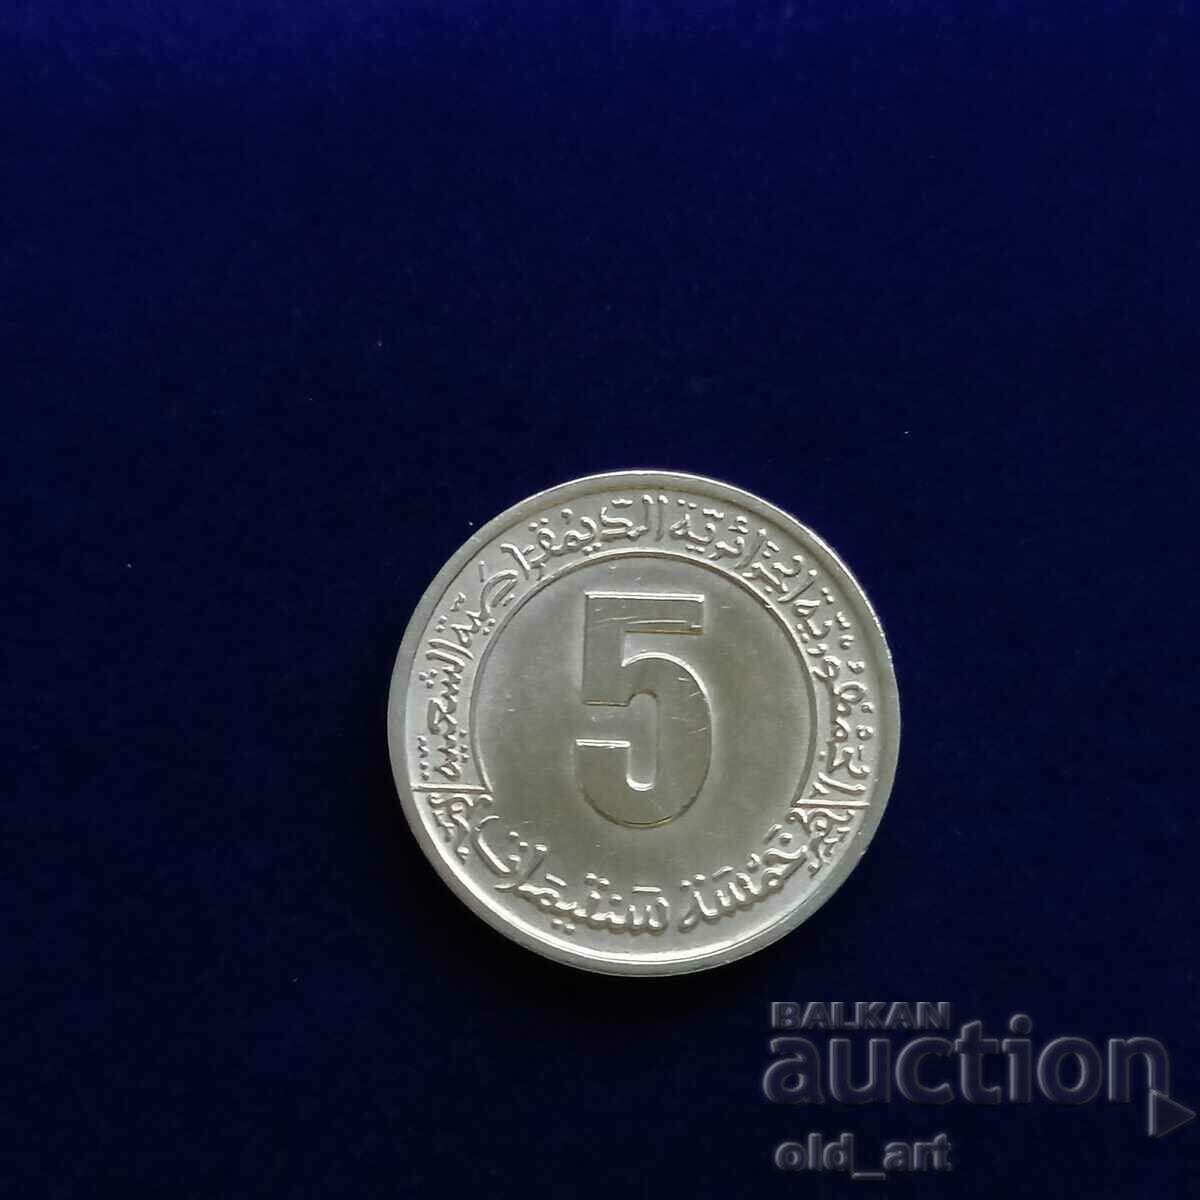 Monedă - Algeria, 5 centimes 1974, comemorativă, al 2-lea al cincilea an. plan